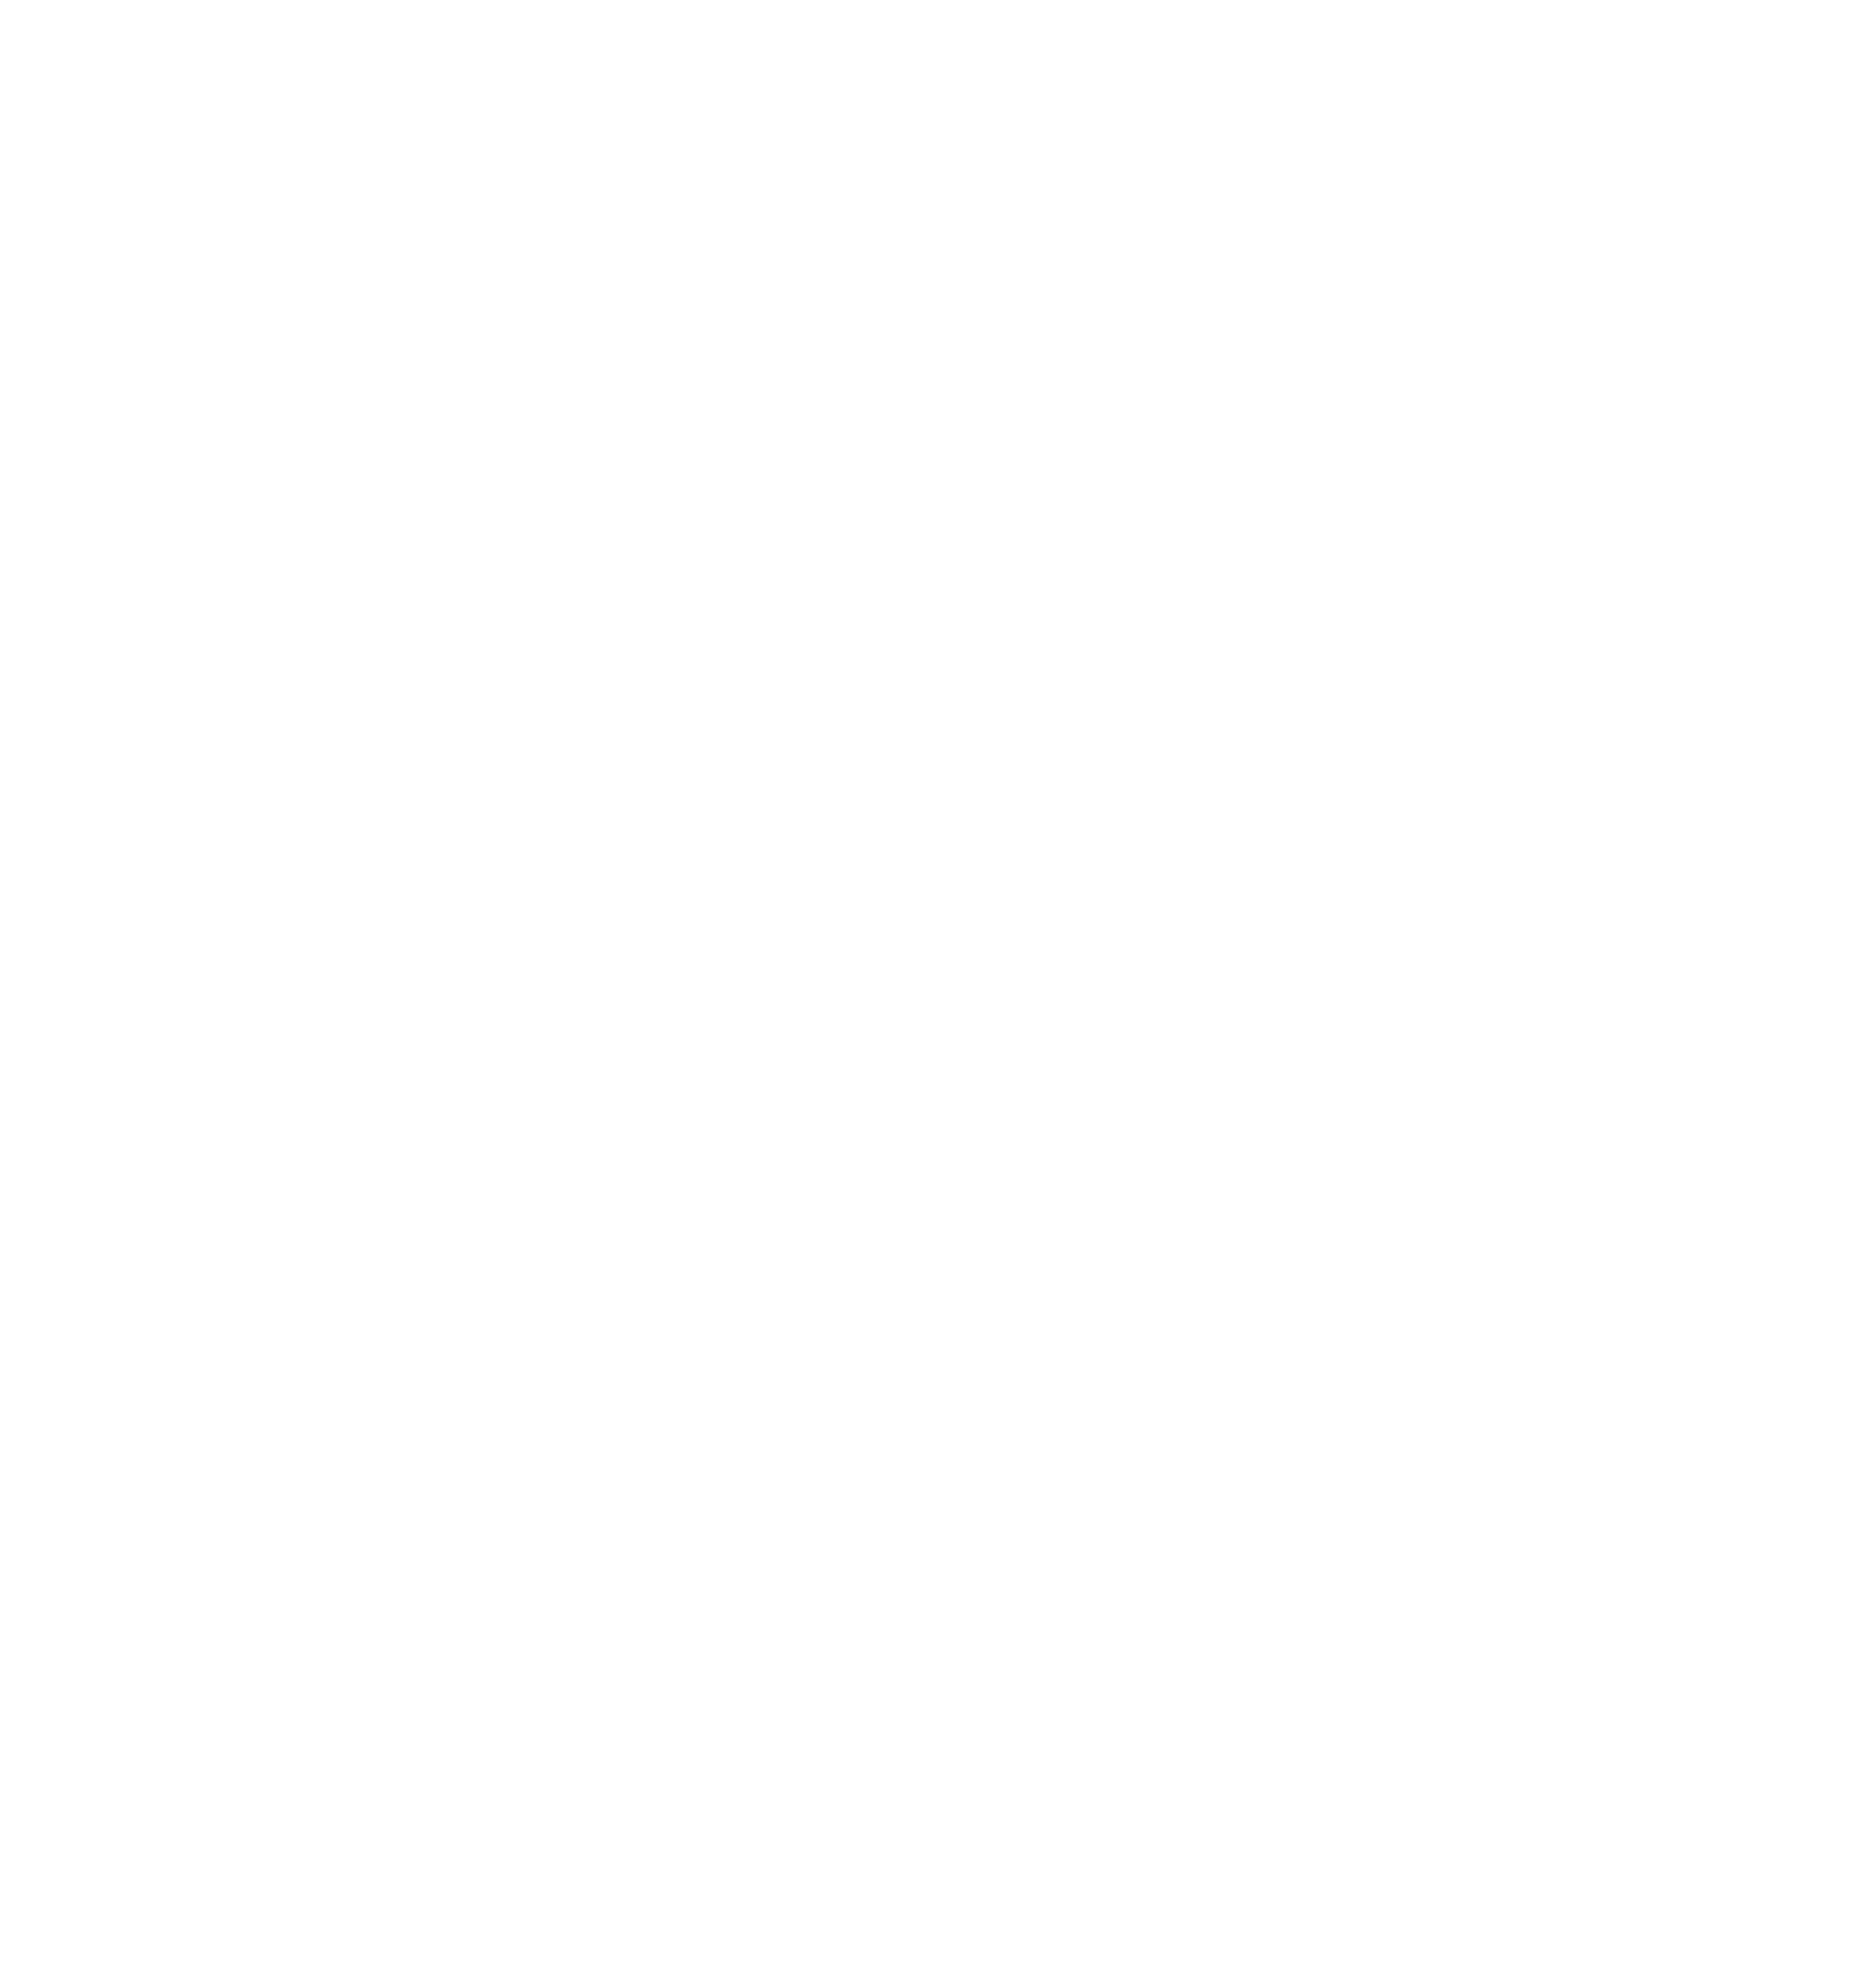 Expertise.com Multi Year Winner including 2022!